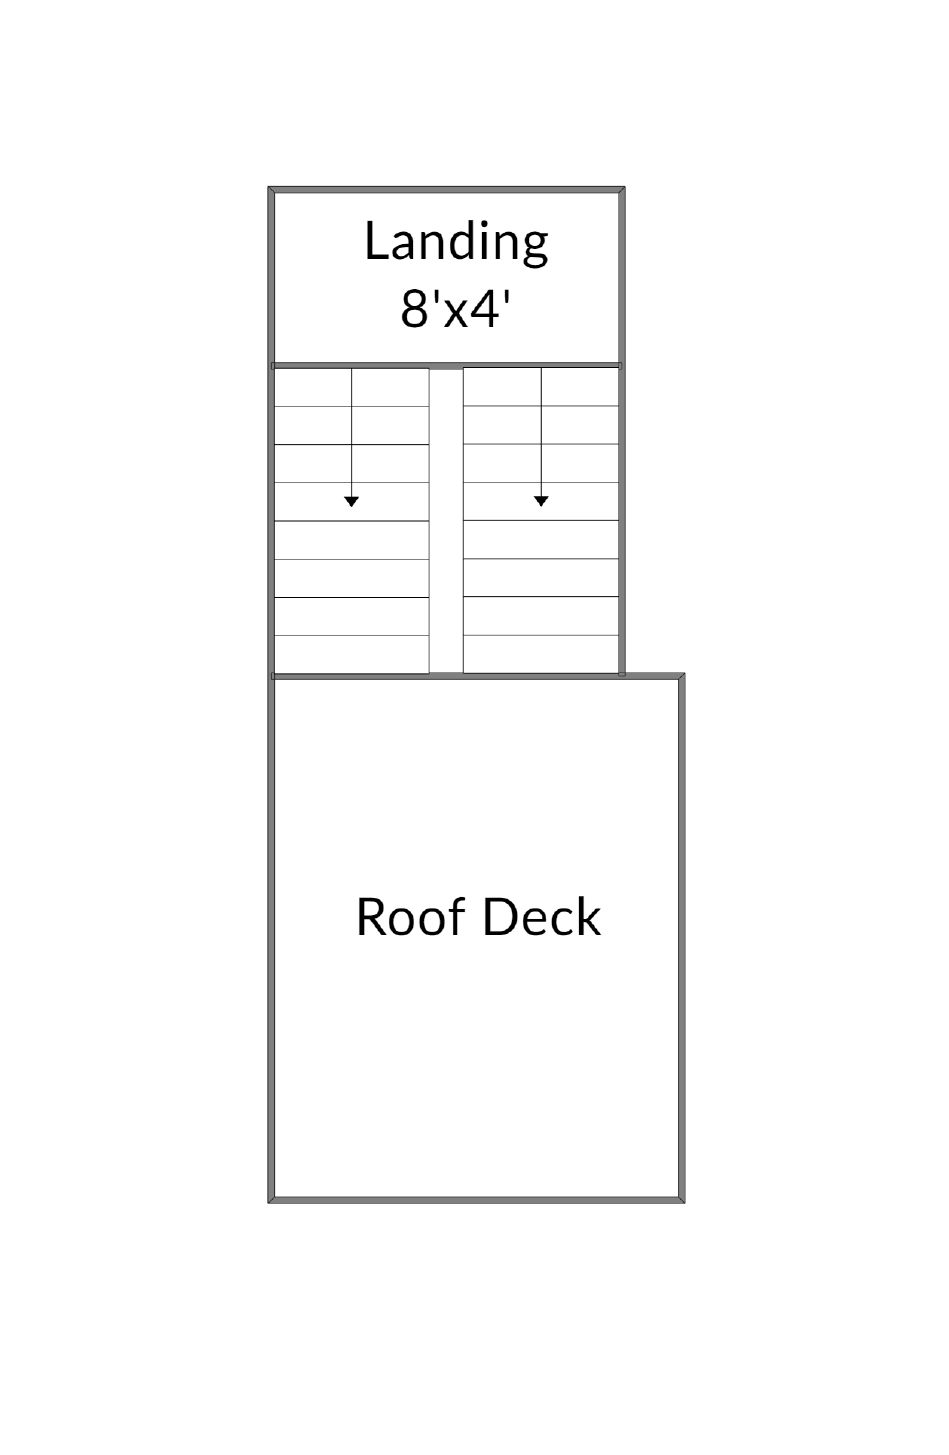 Top Floor Deck 3352780